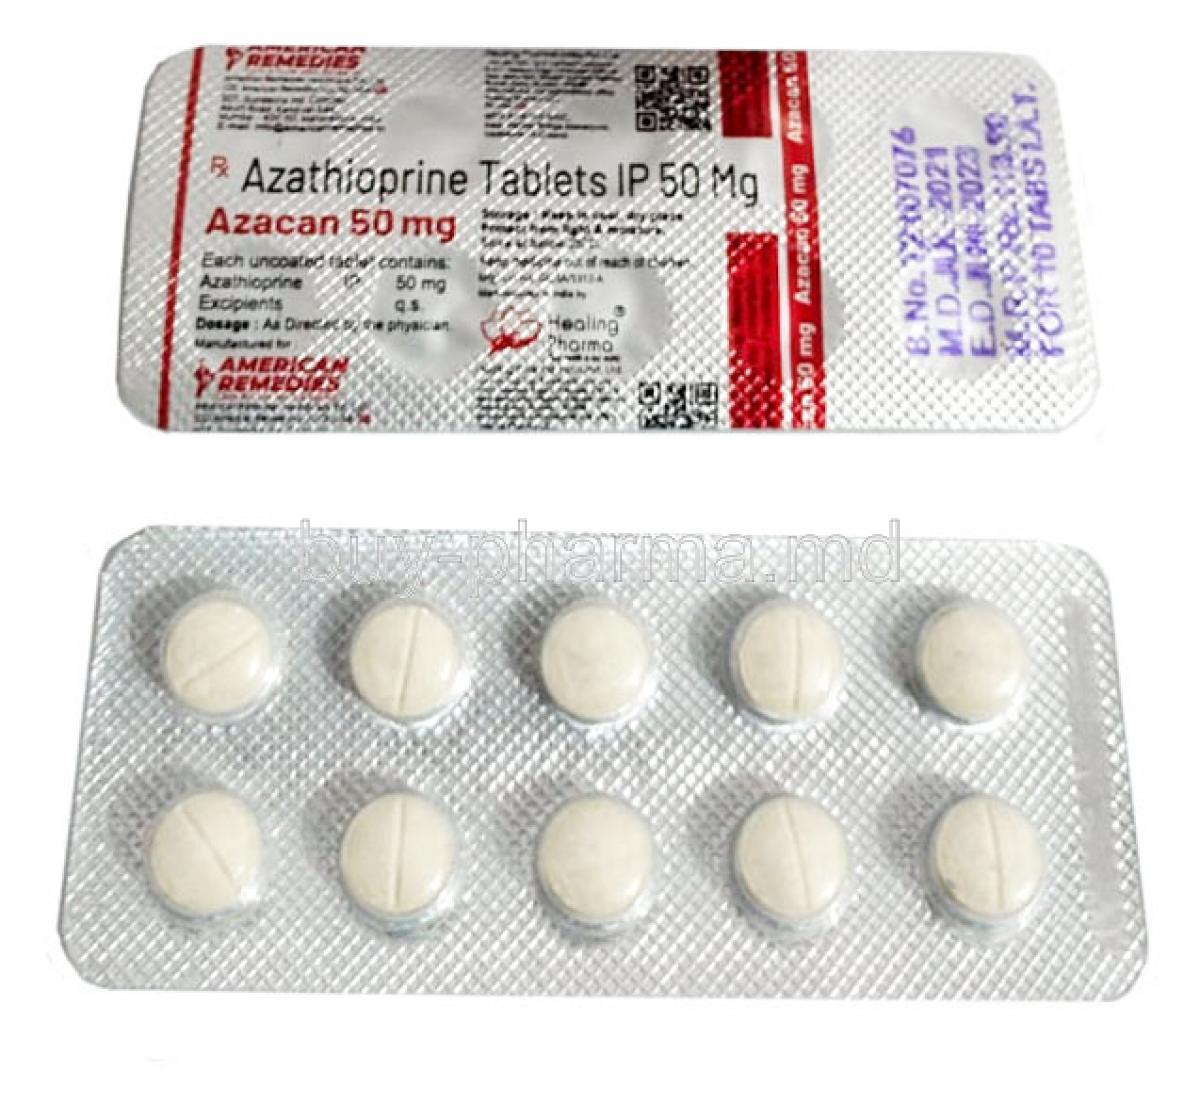 Azacan 50mg, Azathioprine, 50mg, Tablet, Blisterpack informaion